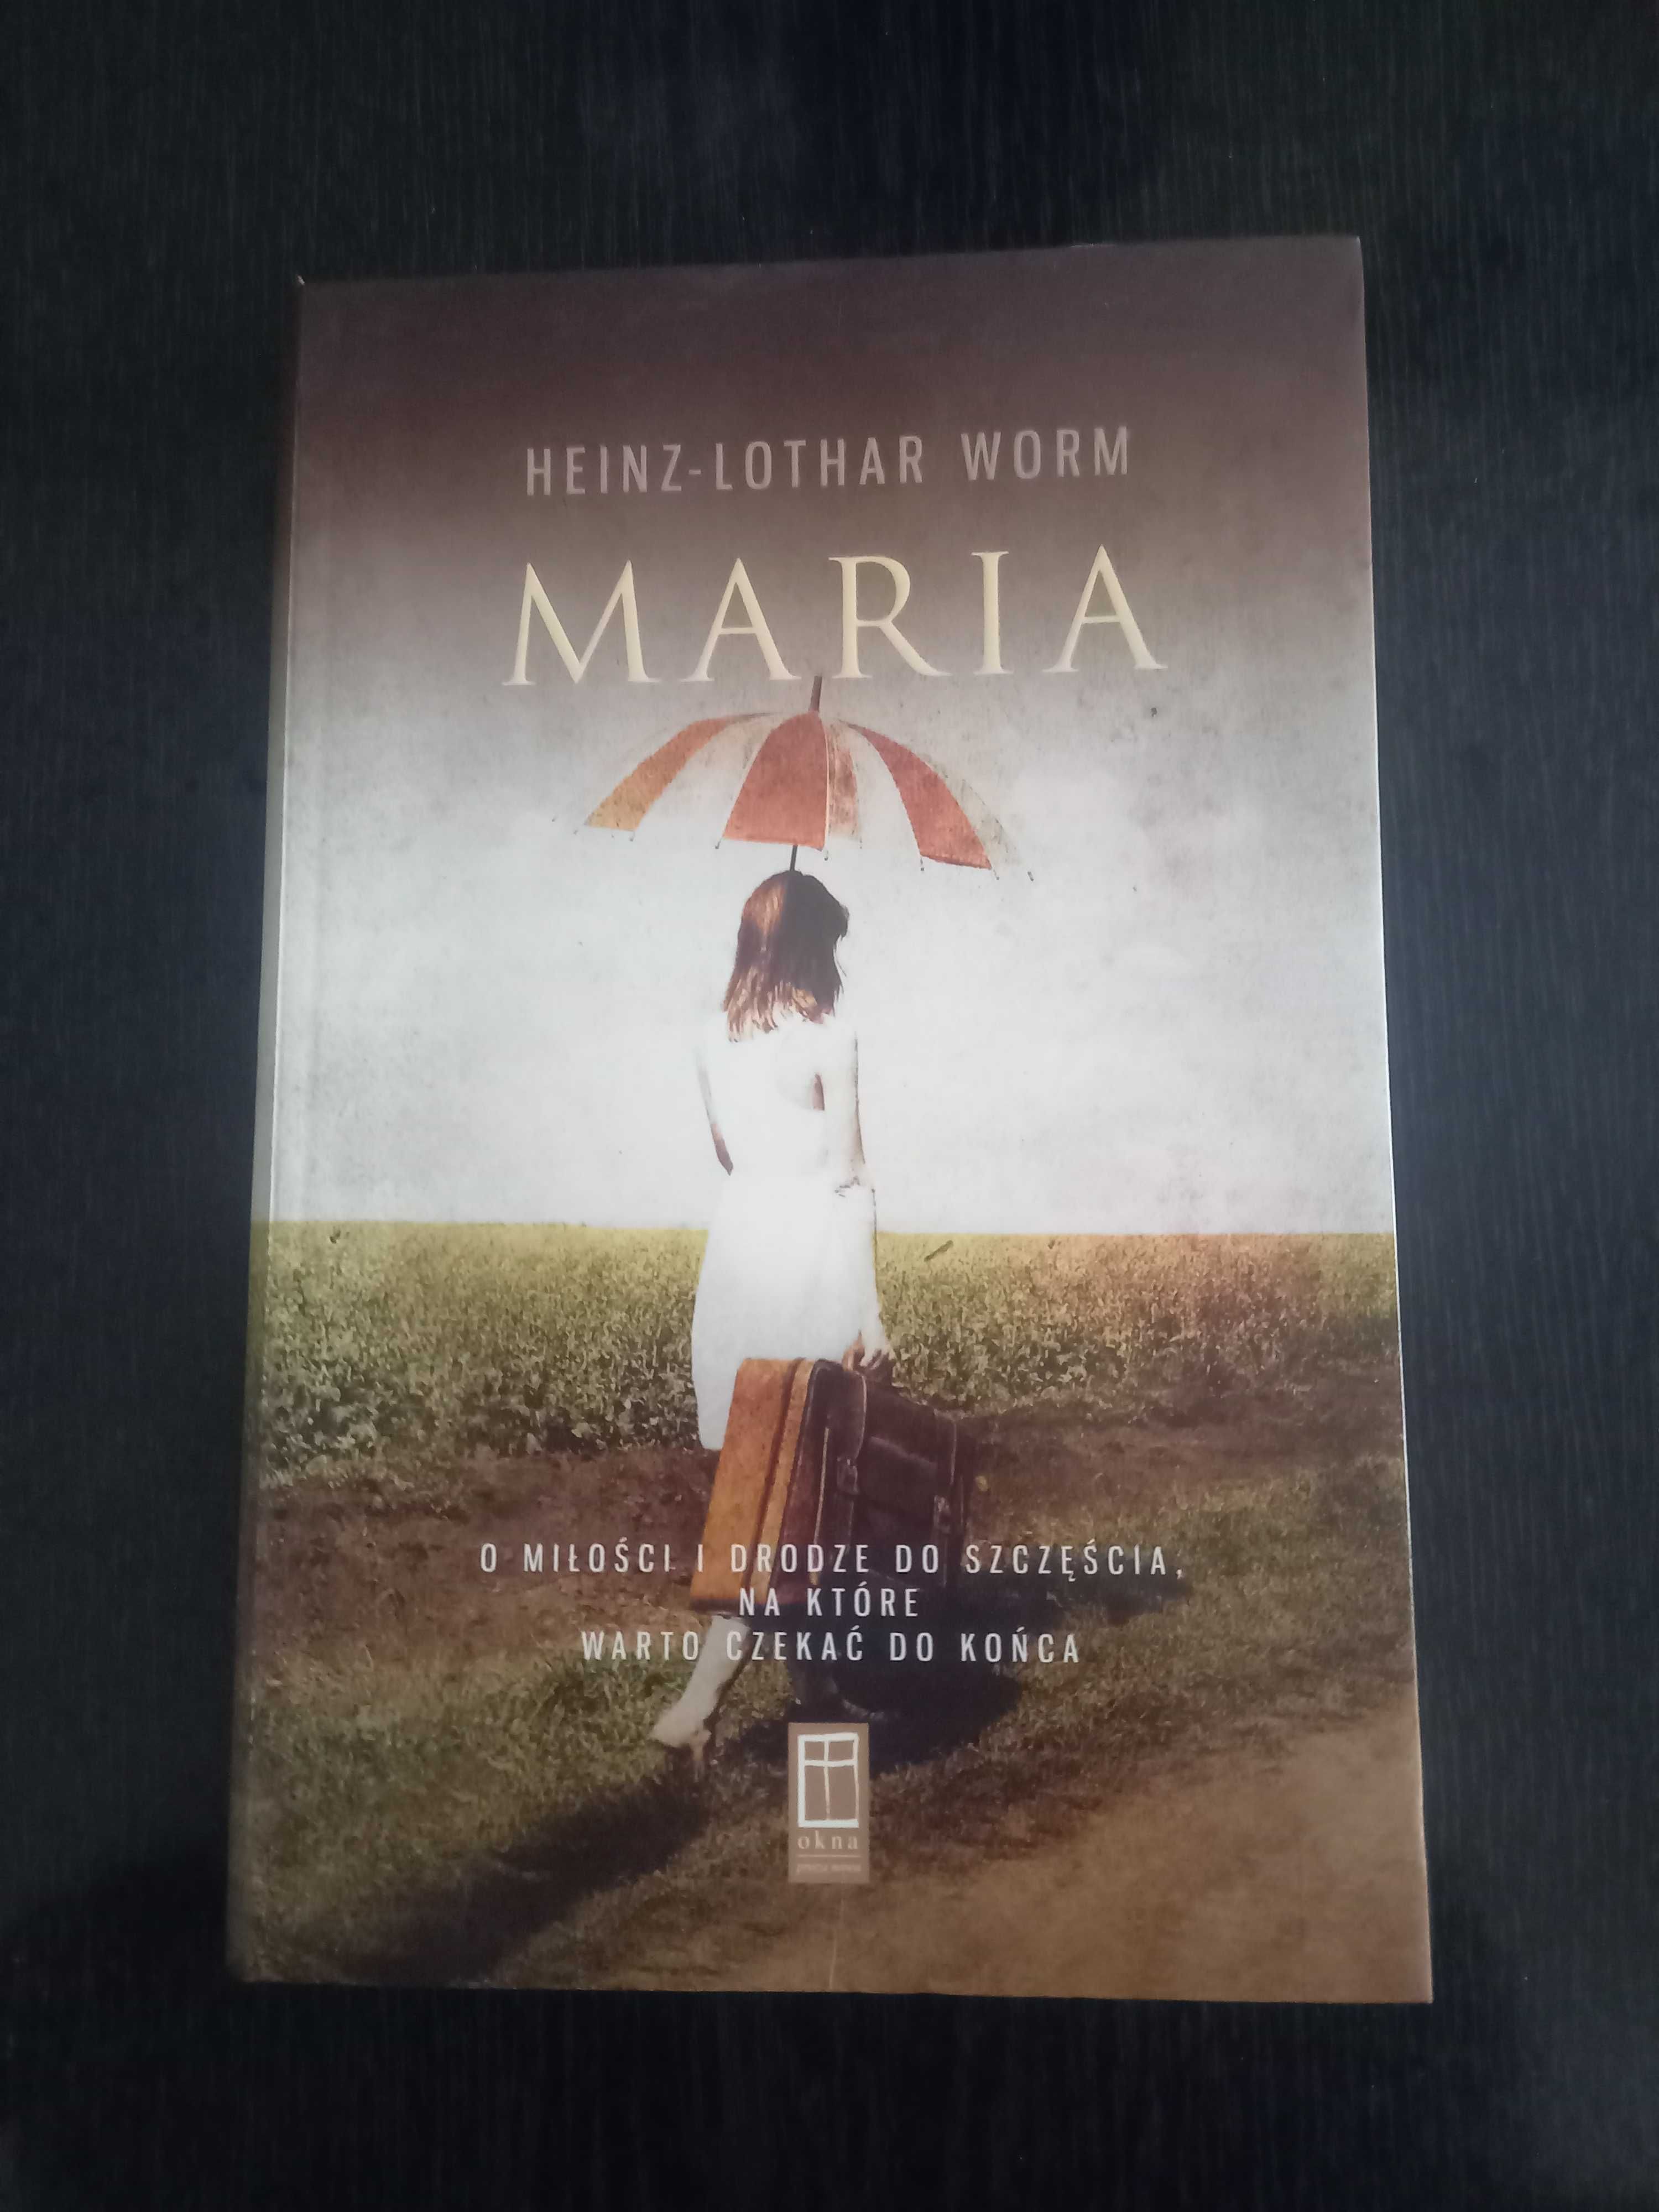 O miłości i drodze do szczęścia "Maria" Heinz-Lothar Worm